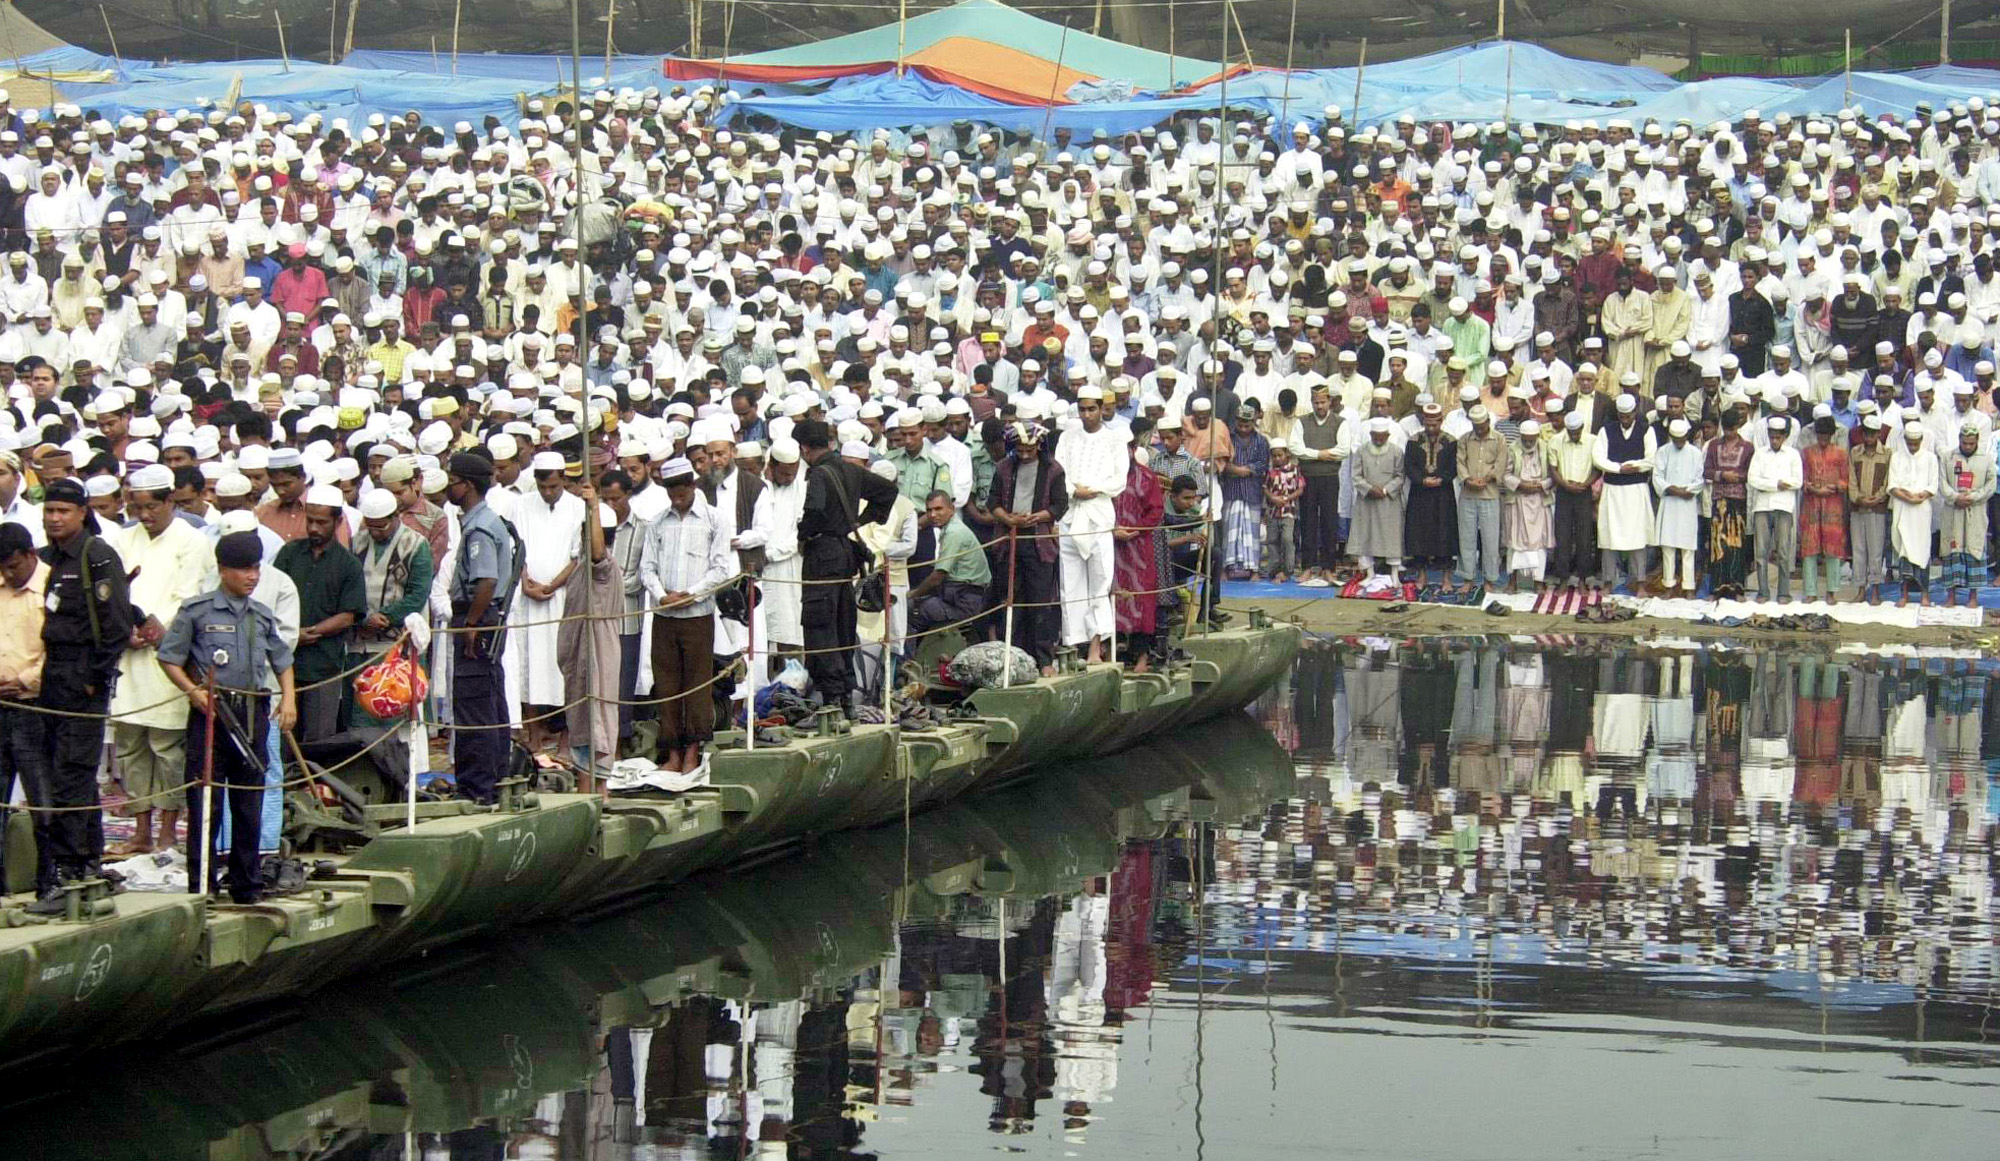 Второе по величине мировое собрание мусульман после хаджа – это Бишва иджтима в Бангладеш.